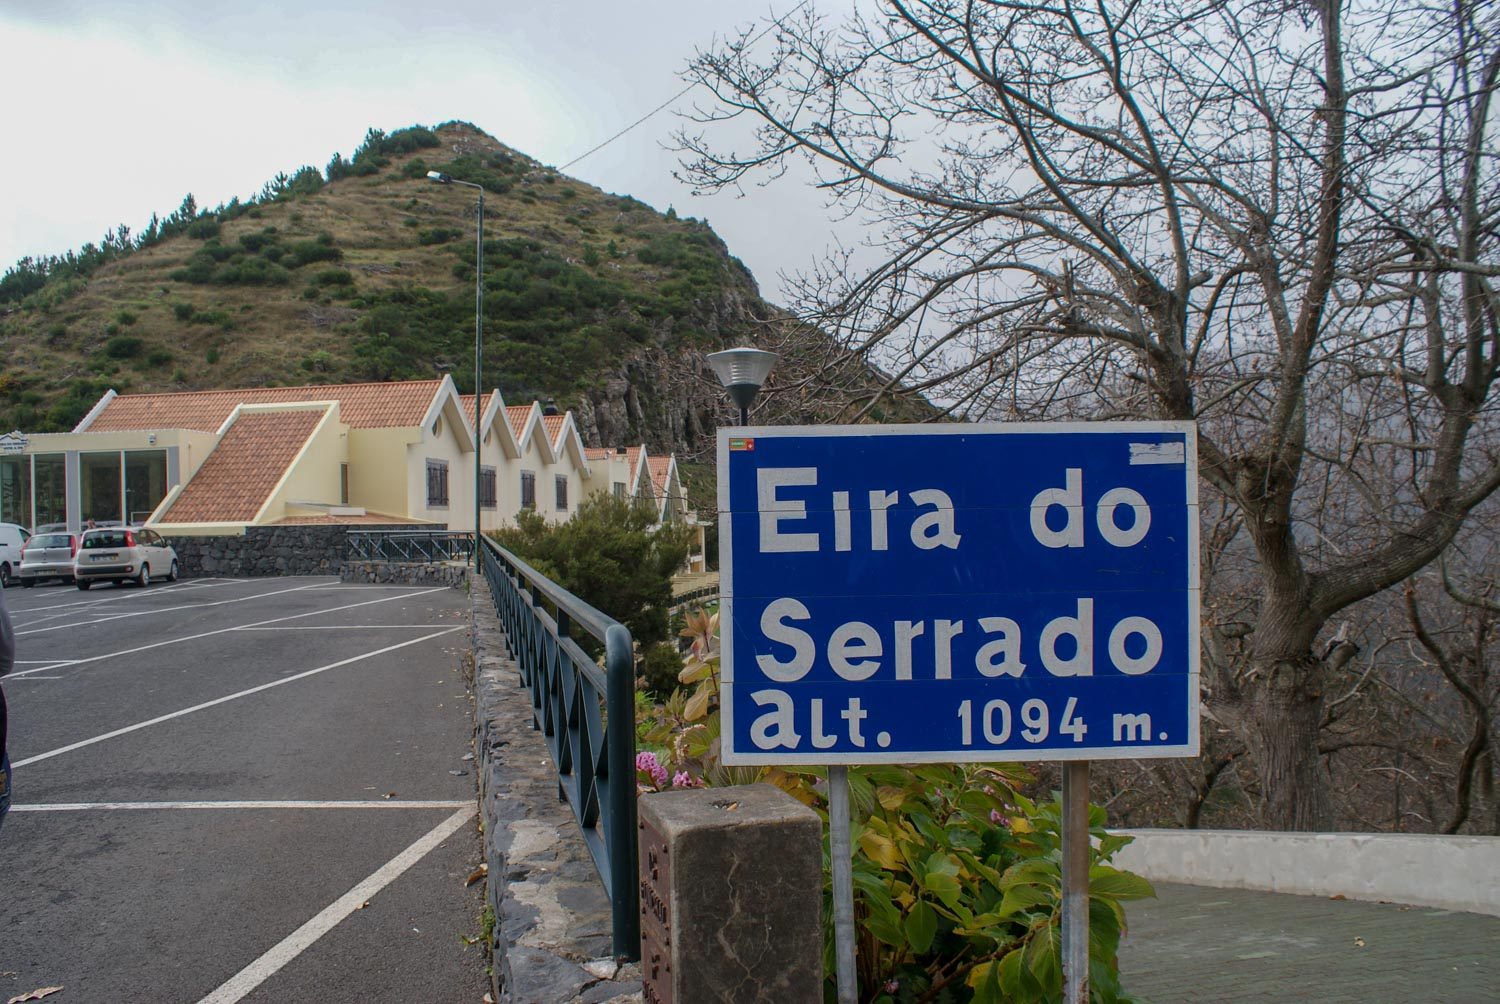 Eira do Serrado. Здесь даже отель есть